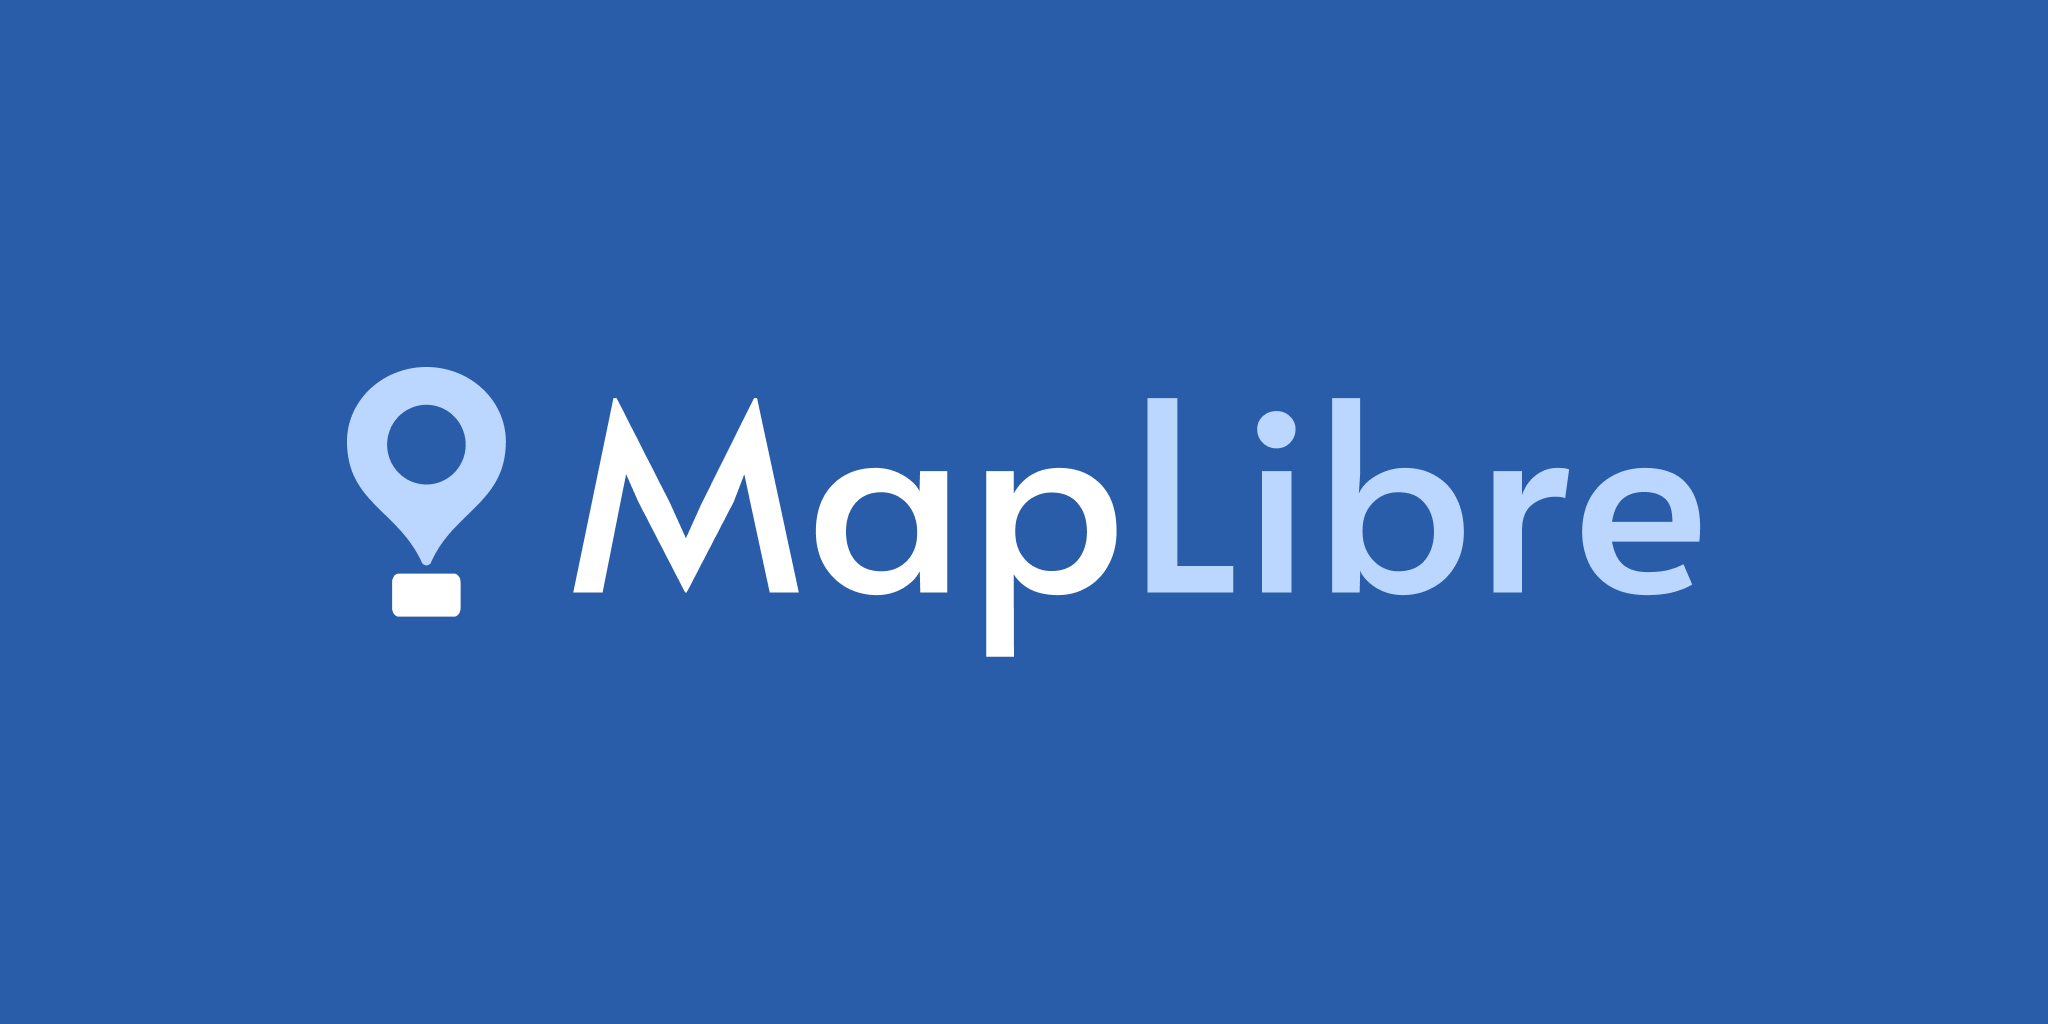 maplibre.org image